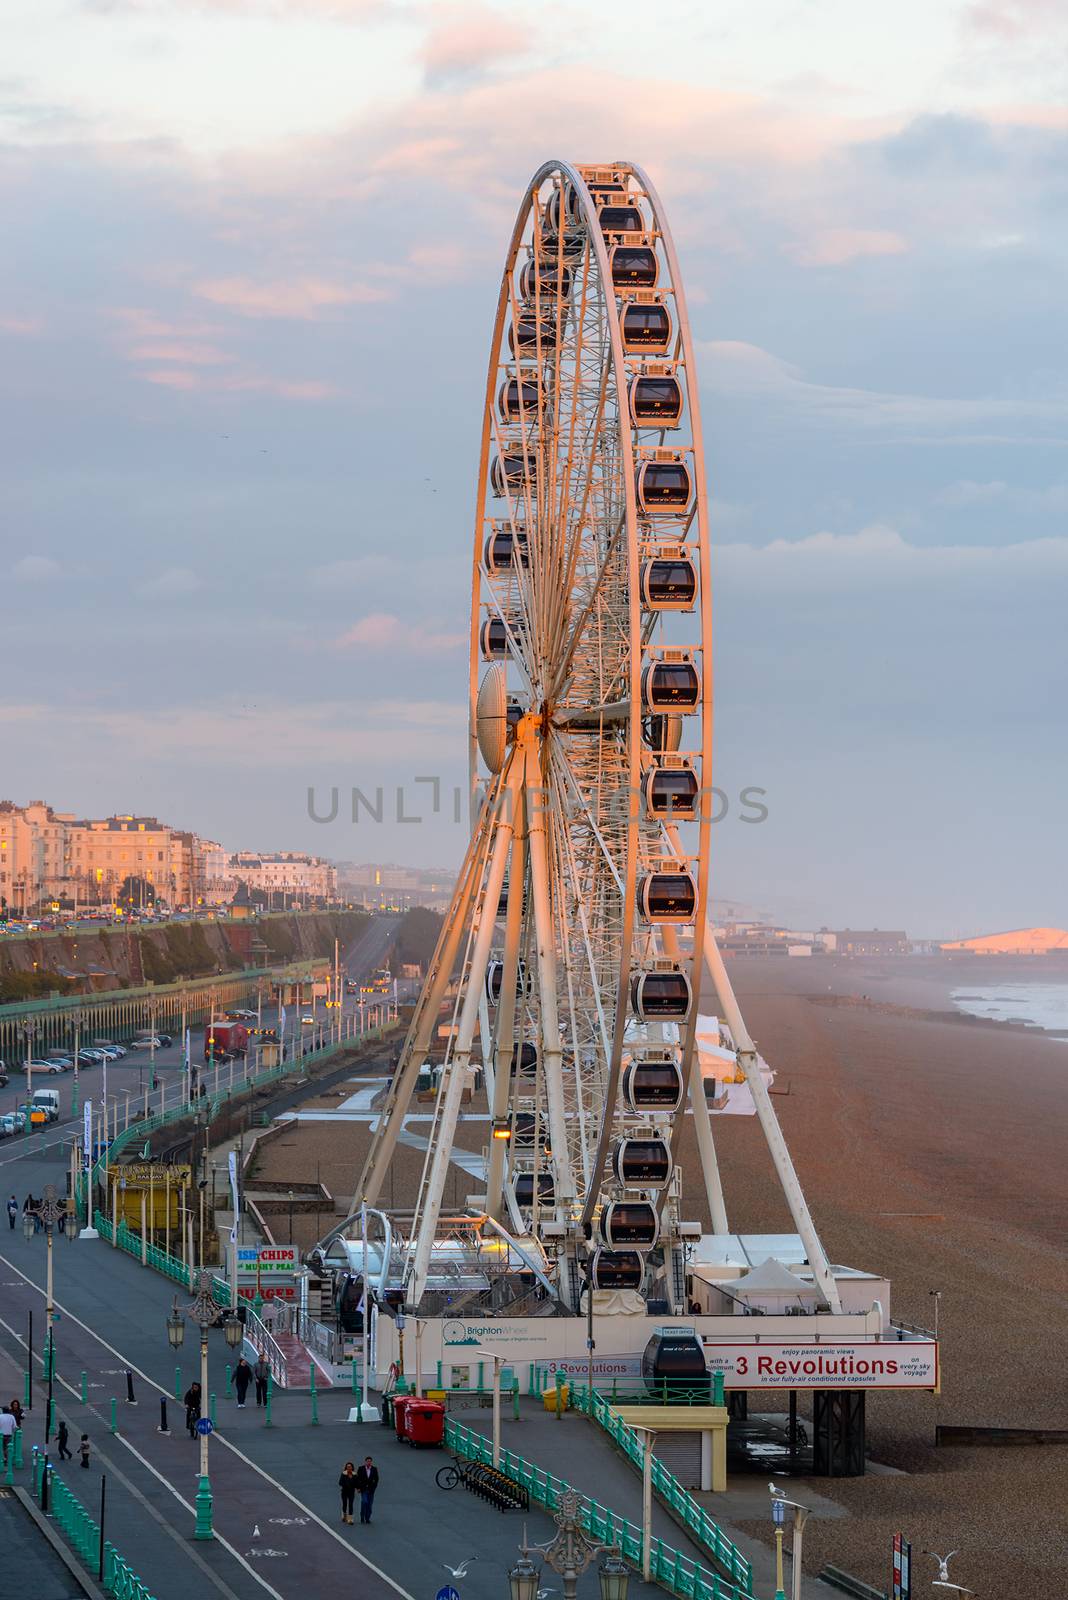 BRIGHTON, UK - CIRCA APRIL 2013: The Brighton Wheel on the seafront.